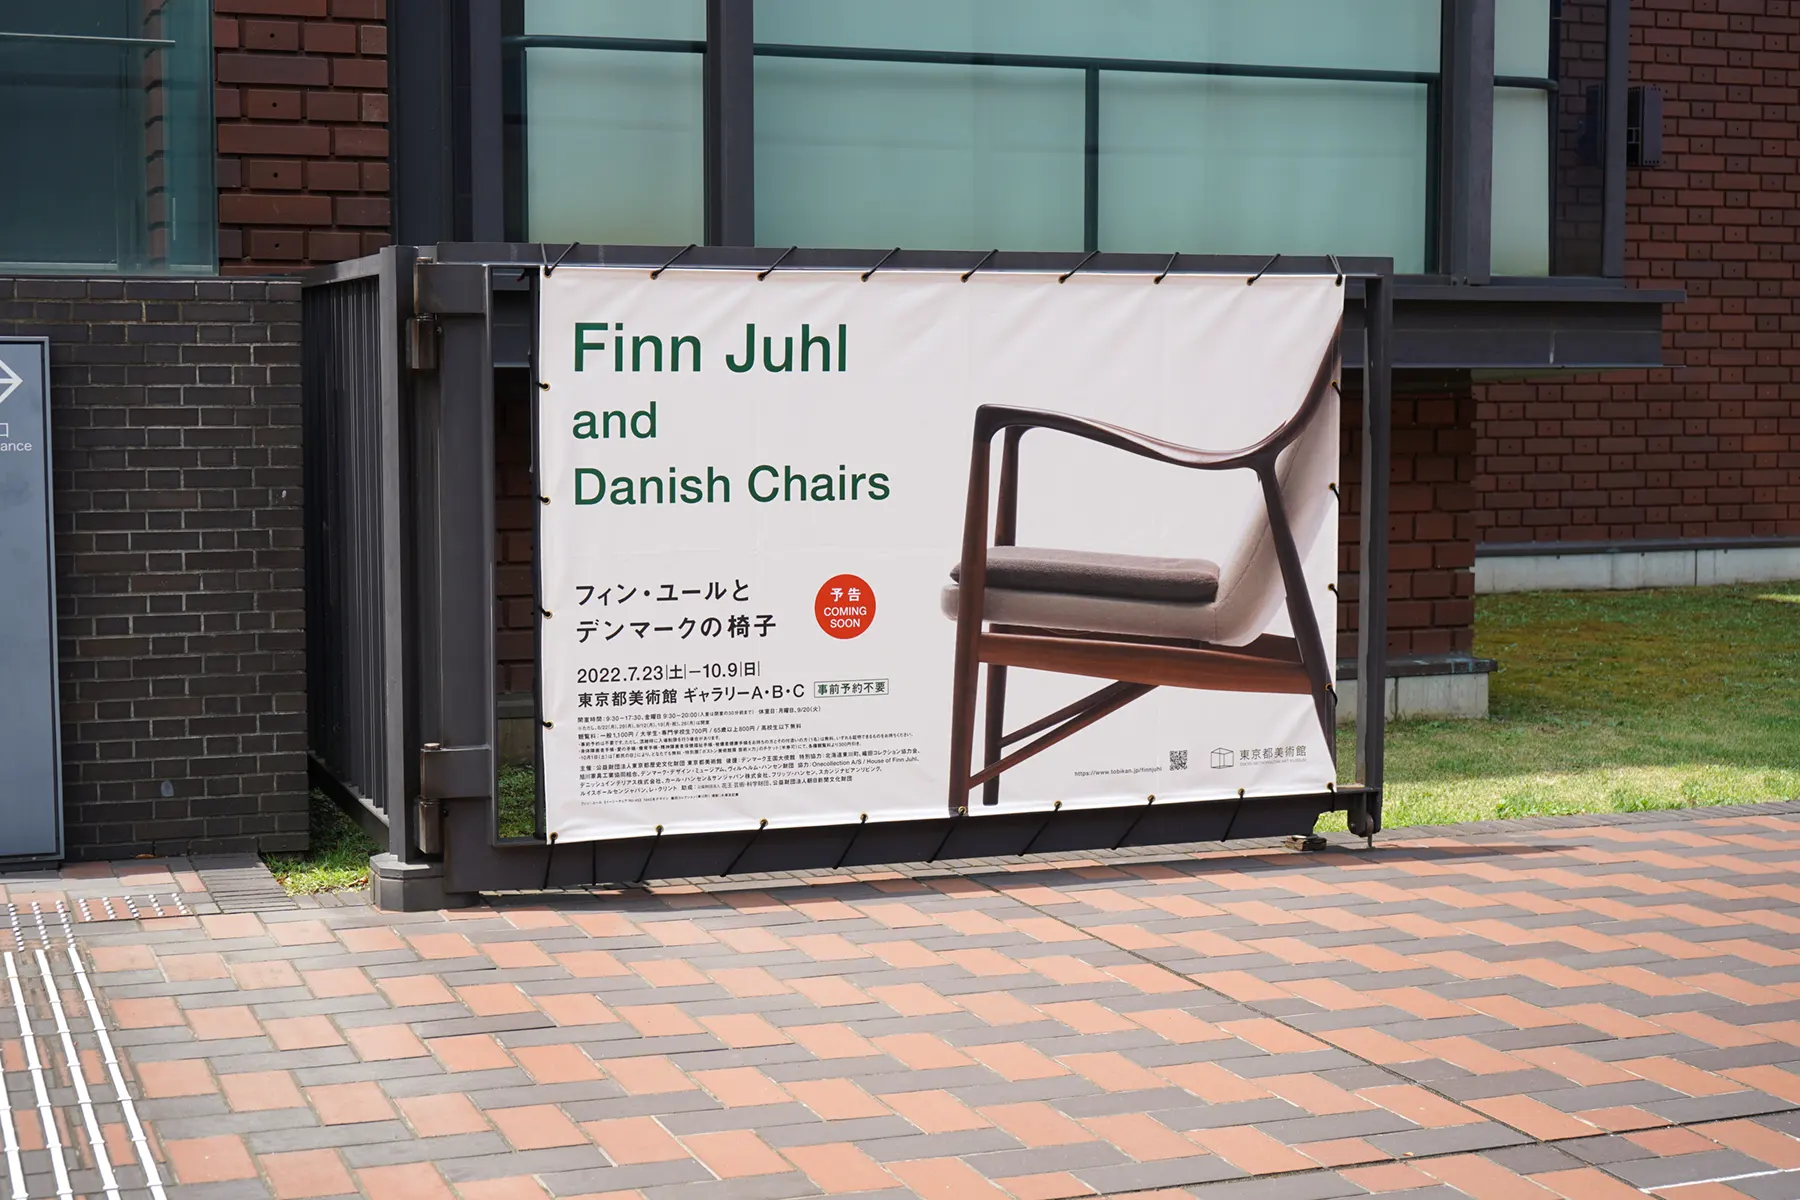 東京都美術館 企画展「フィン・ユールとデンマークの椅子」 会場前で出迎えてくれるメインヴィジュアル